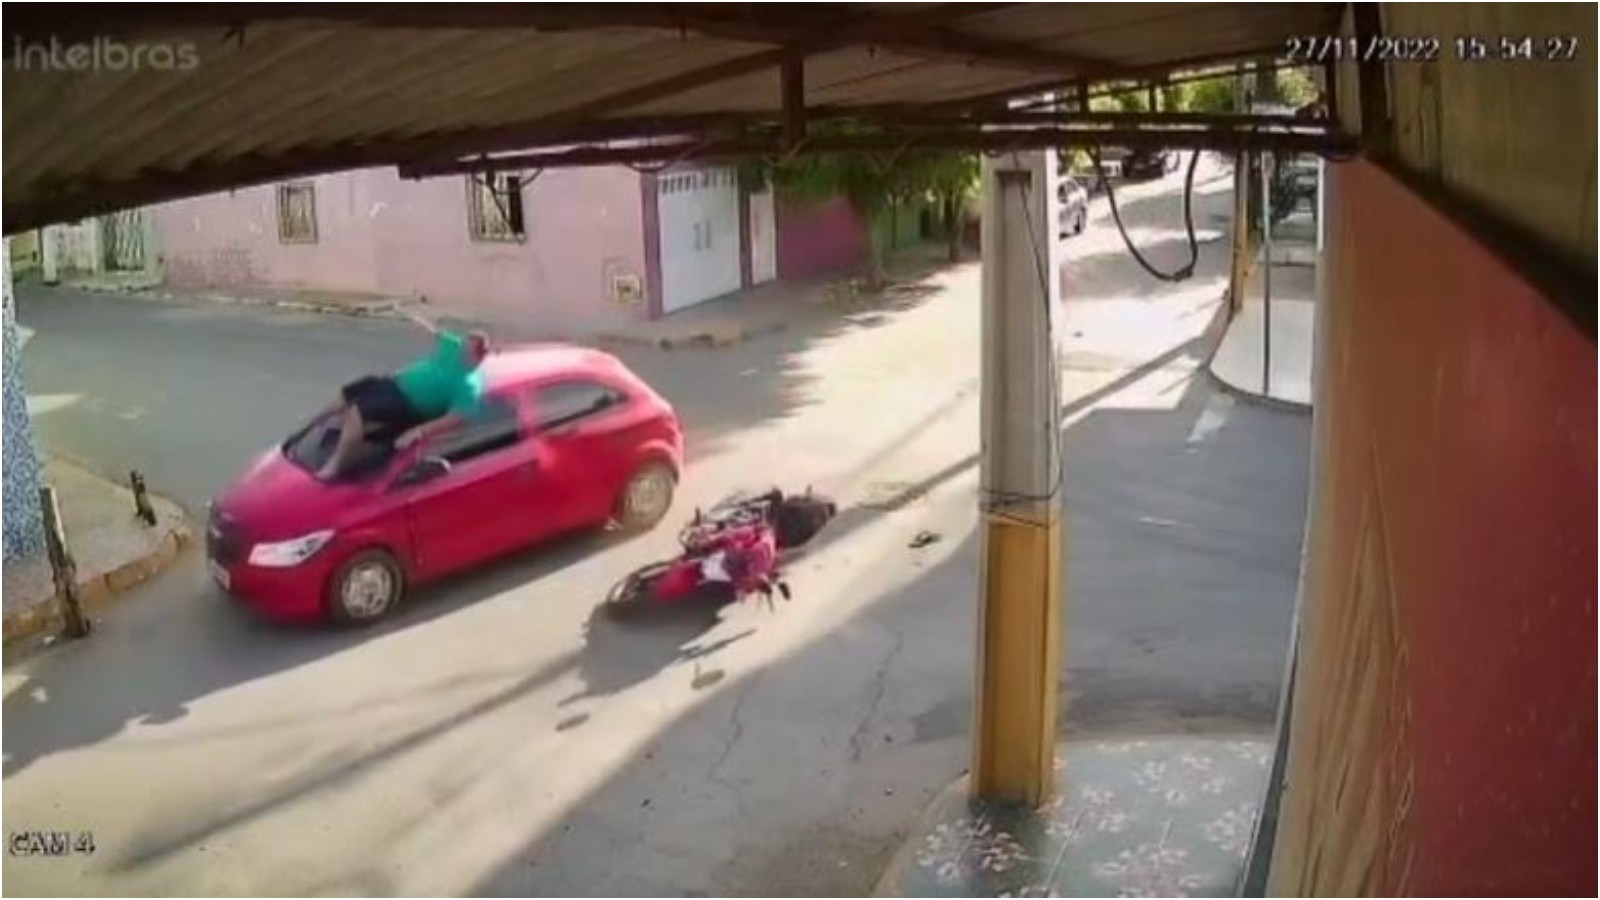 Motociclista bate em carro, gira sobre o veículo e sai andando após acidente no Ceará; vídeo